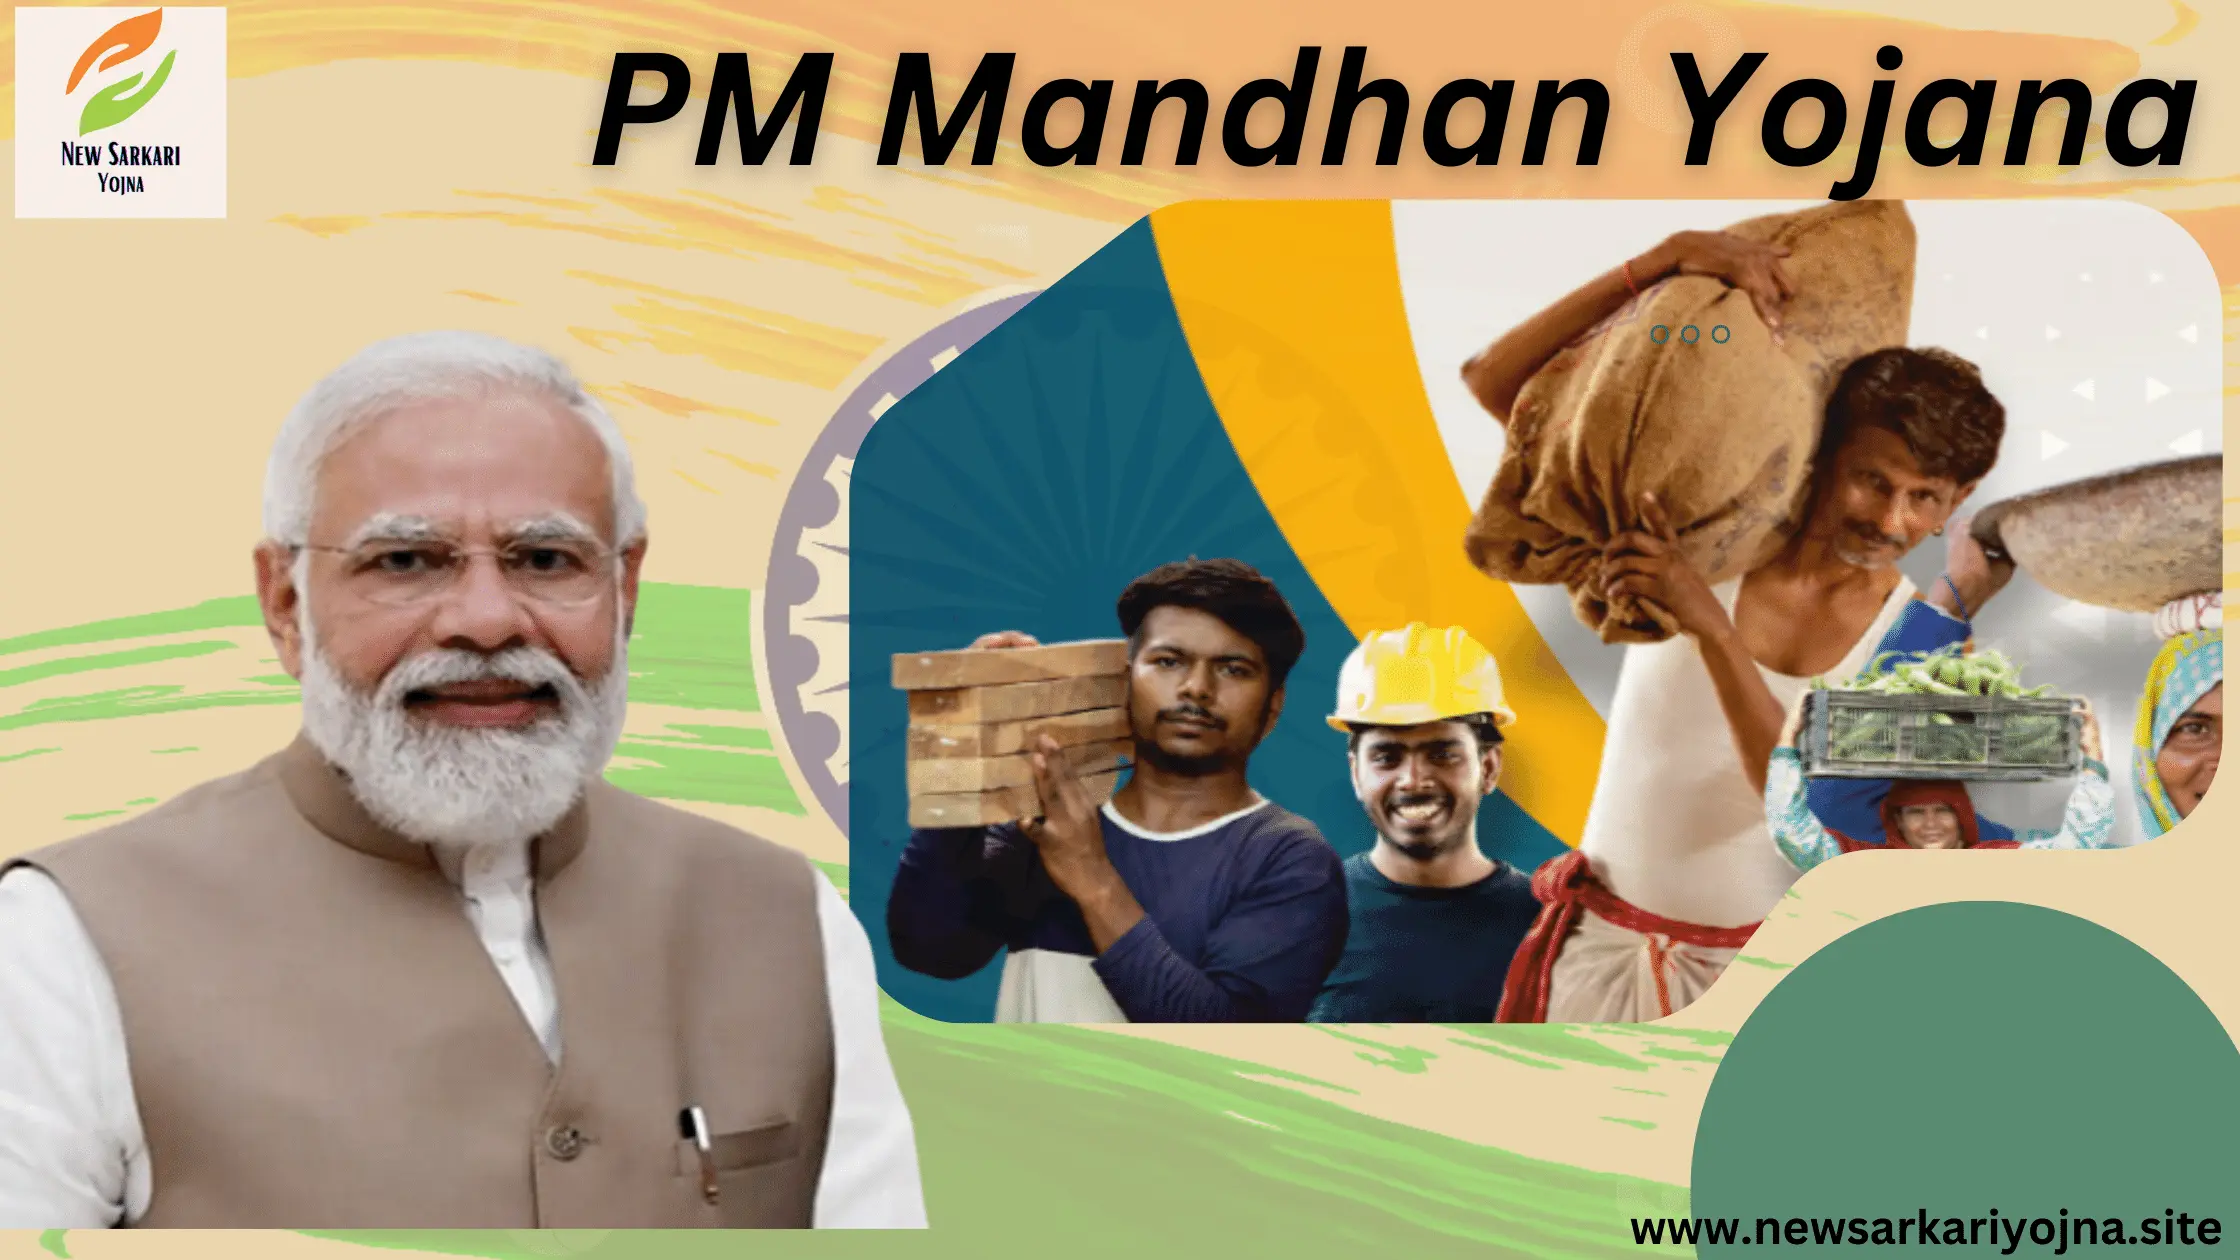 PM Mandhan Yojana in hindi